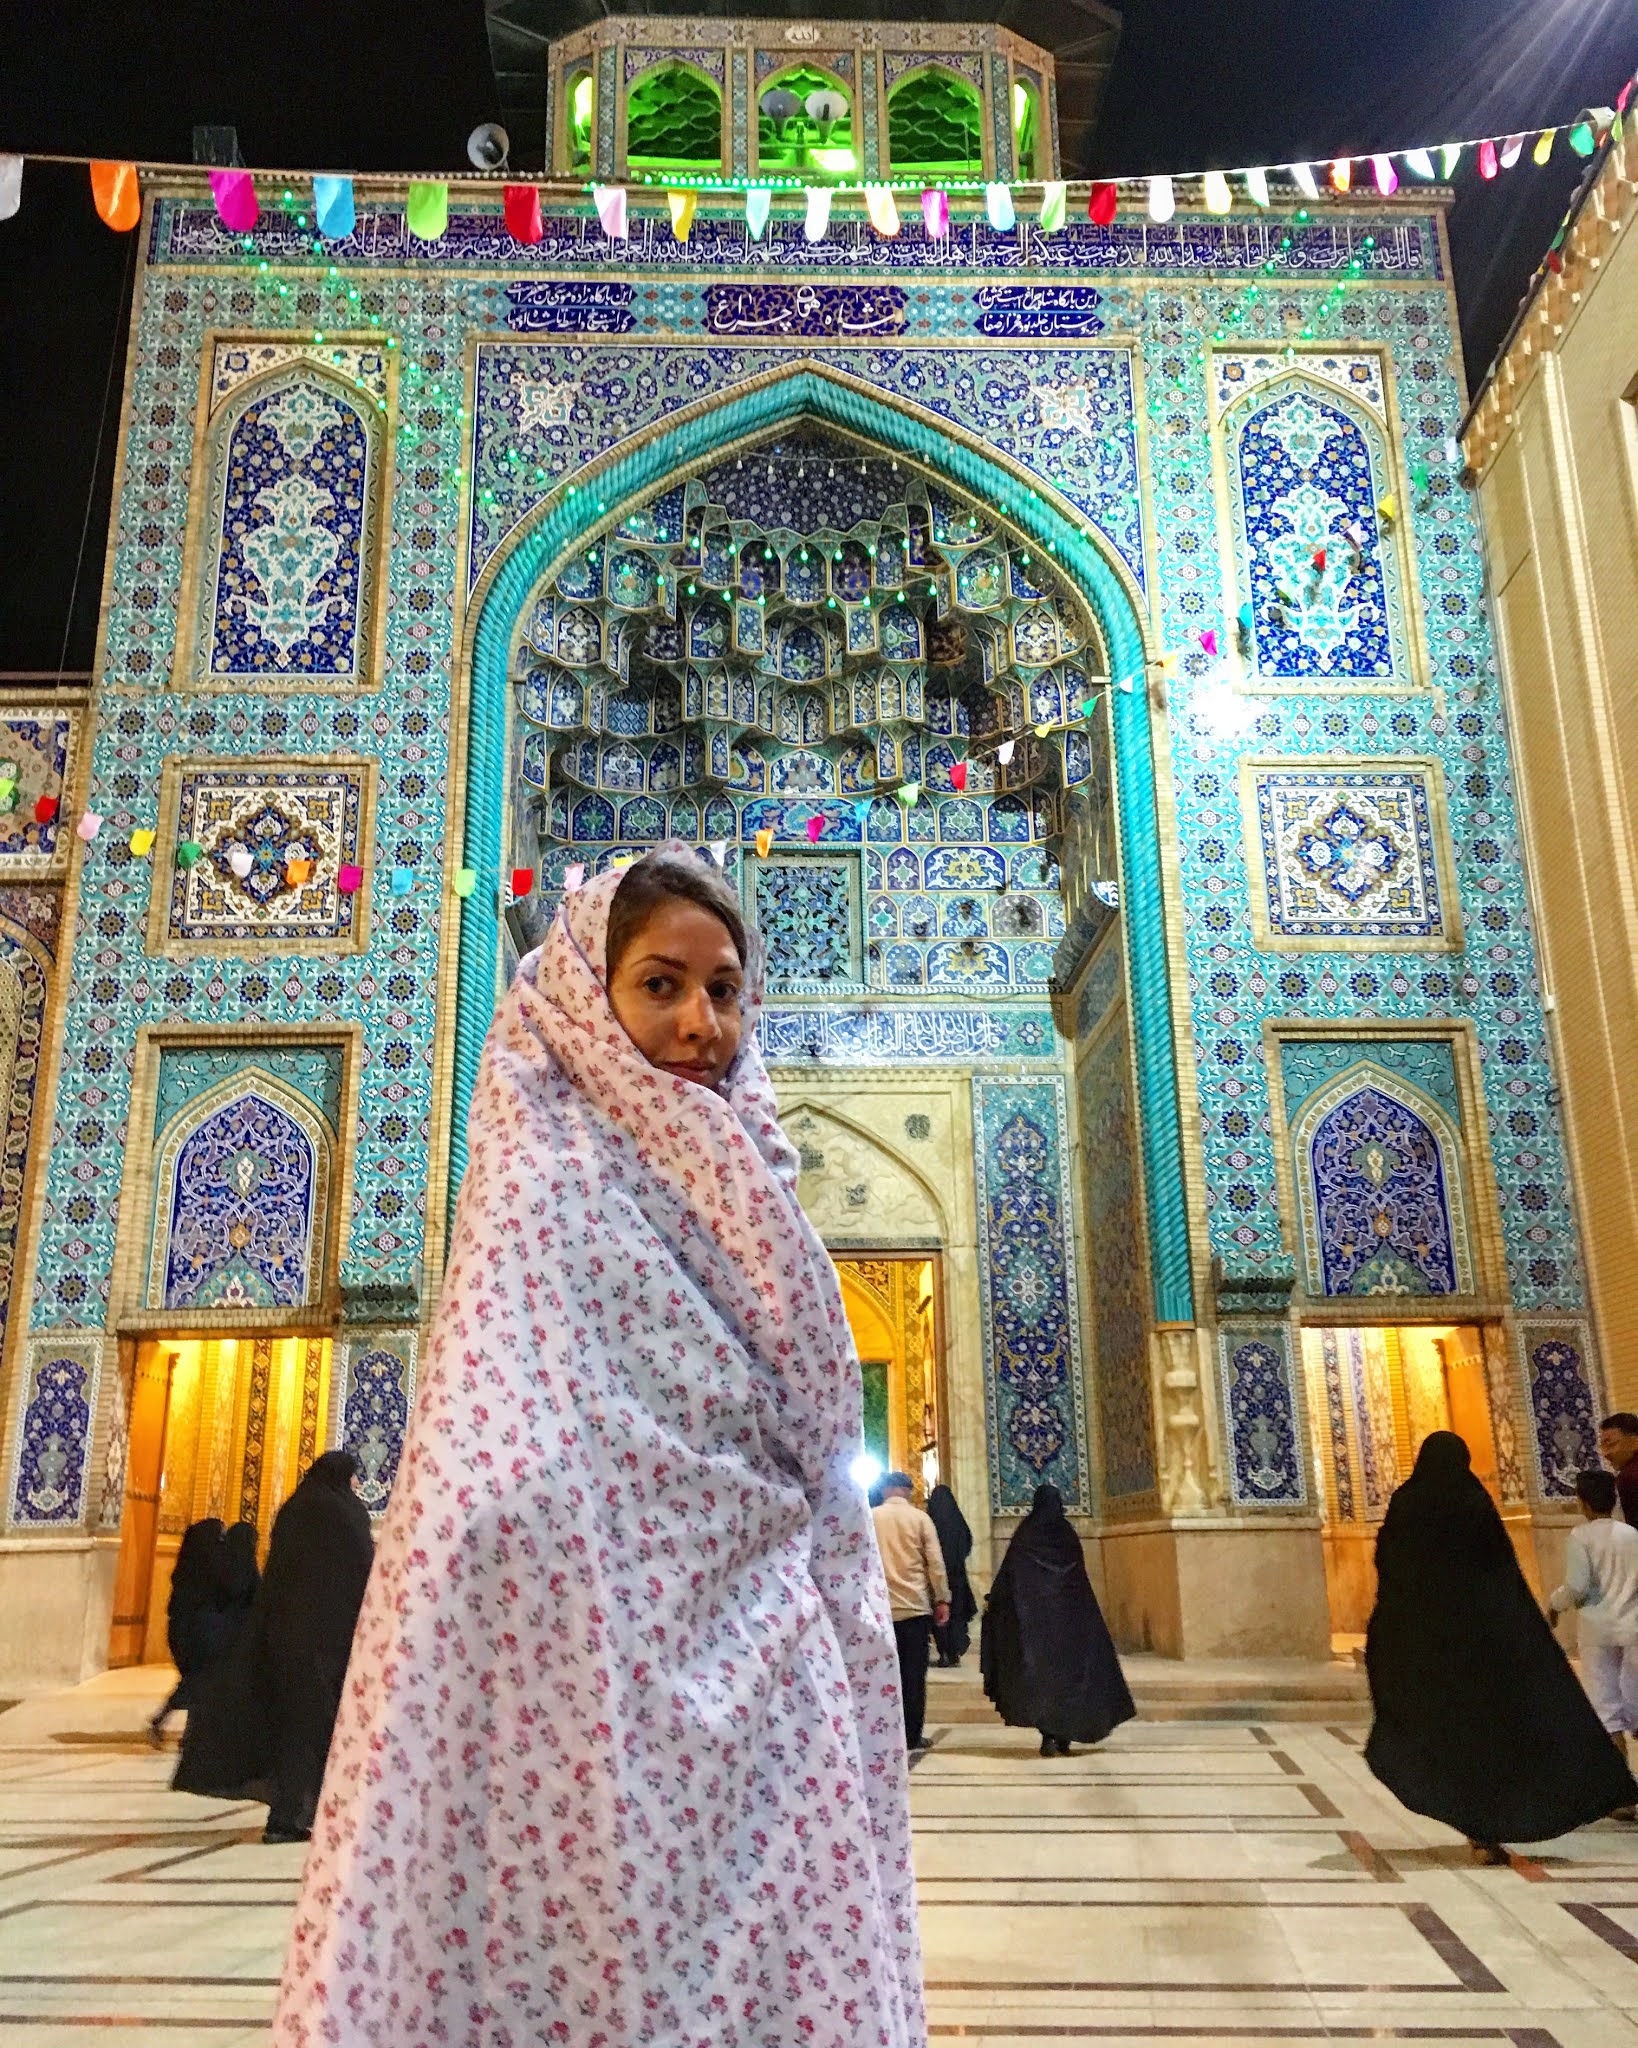 Malvina Dunder blog podróże, rozwój osobisty, relacje, Iran meczet Shiraz